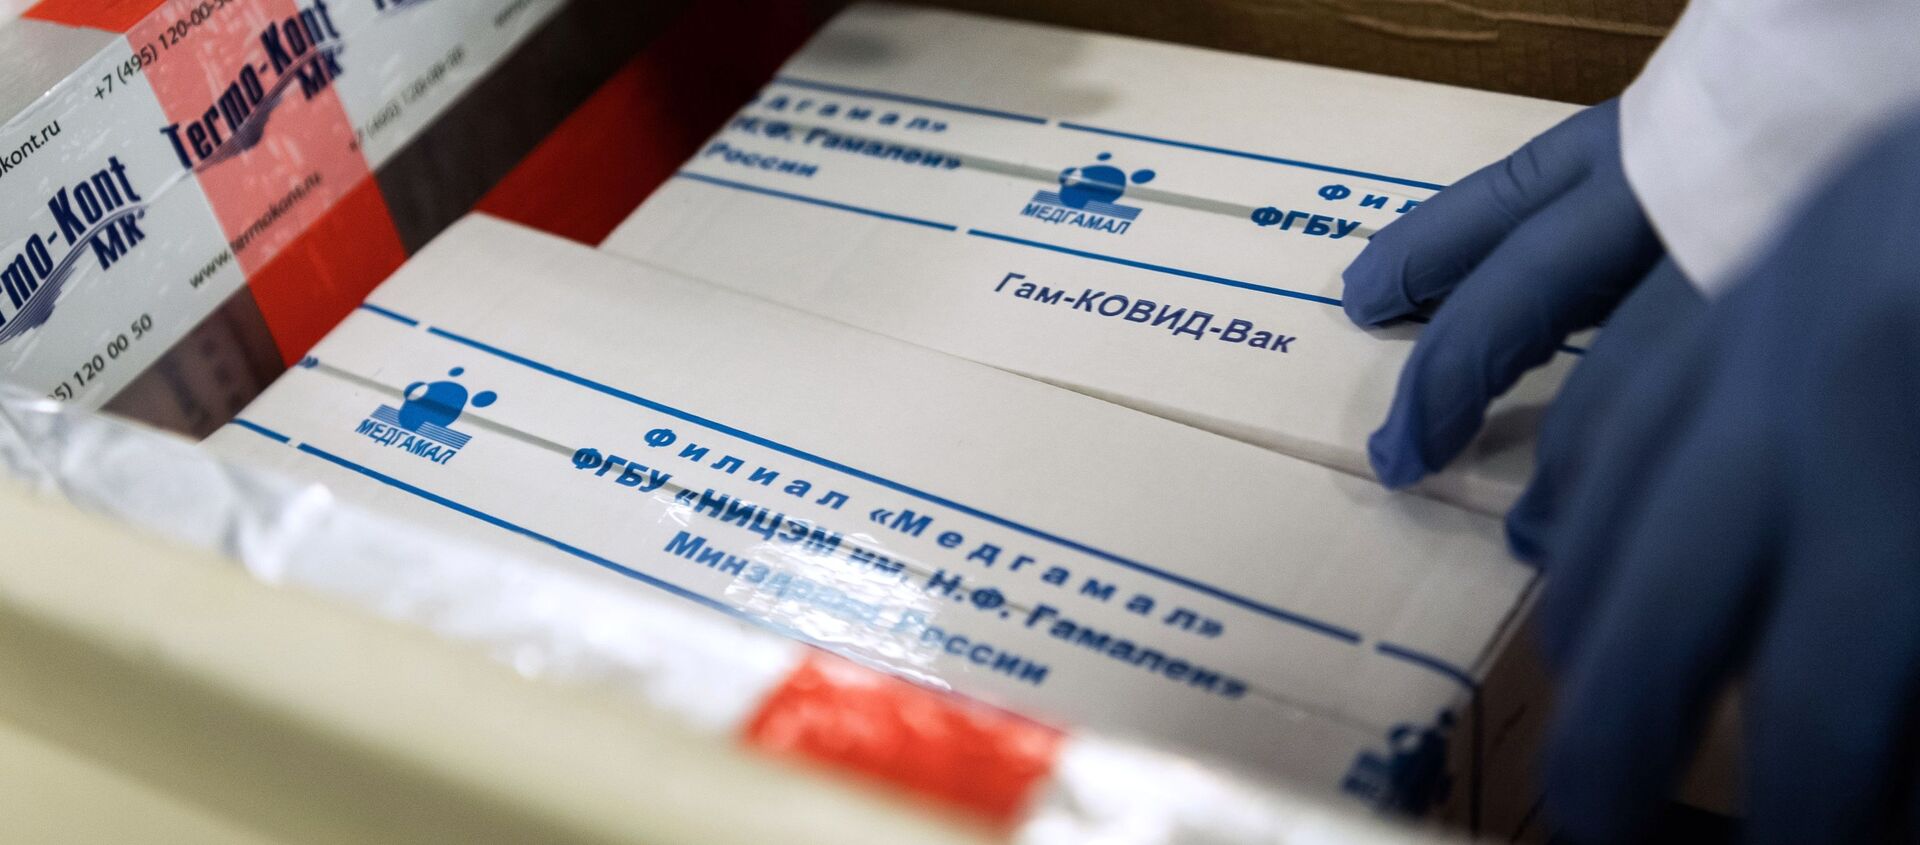 Российская вакцина от коронавируса Спутник V доставлена в Венгрию для клинических исследований - Sputnik Таджикистан, 1920, 10.01.2021